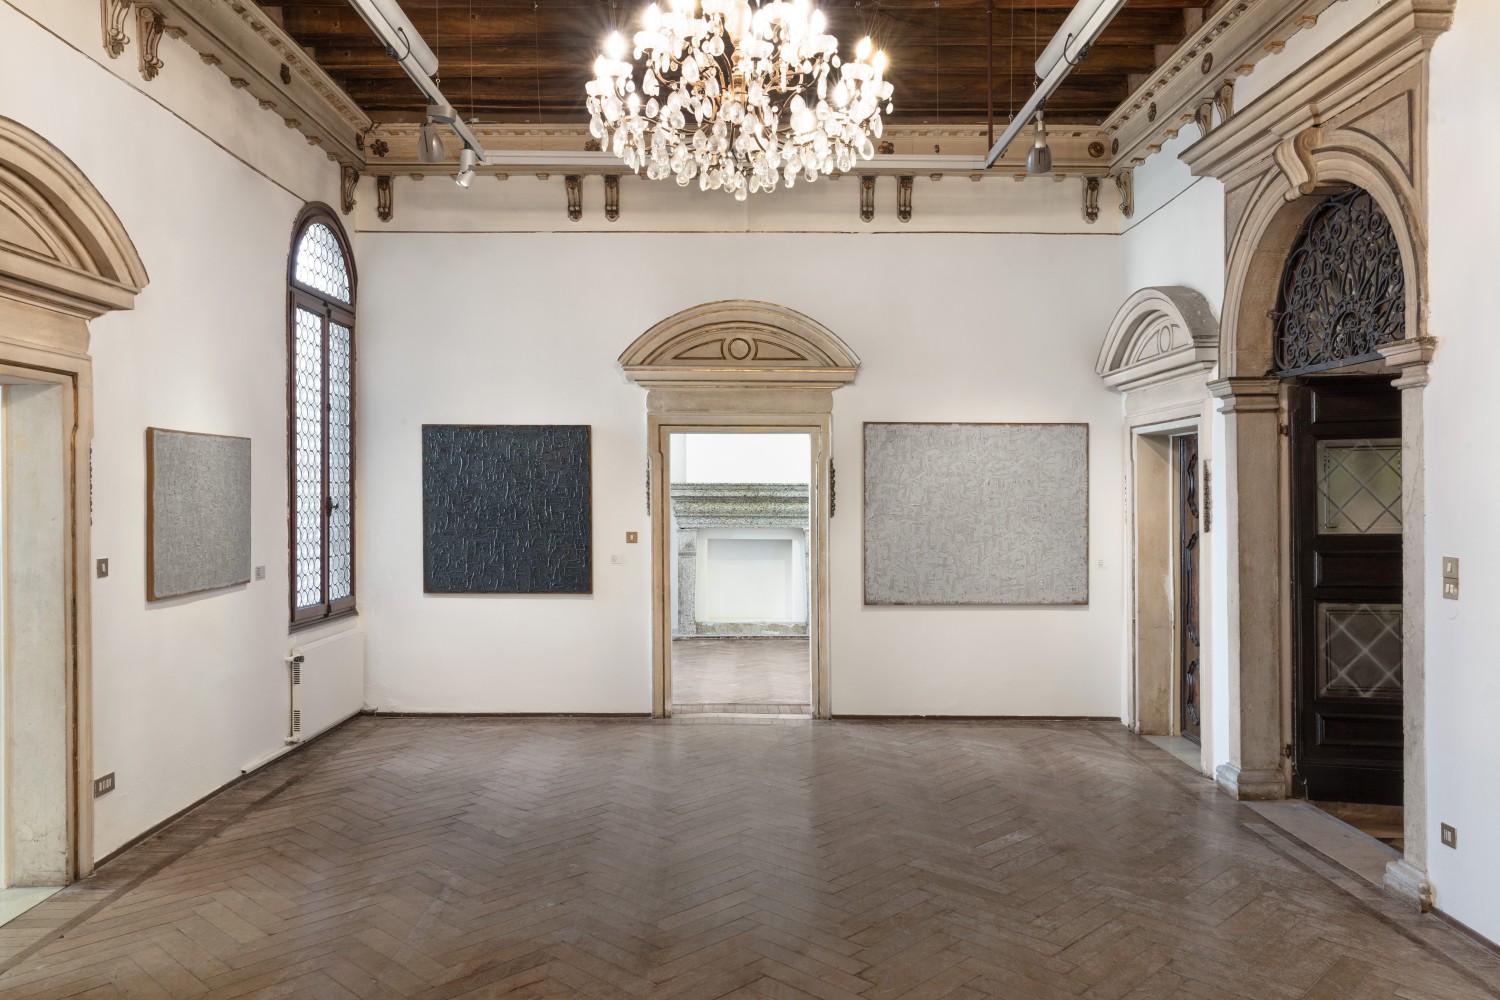 Ha Chong-Hyun, Collateral Event of the 59th International Art Exhibition – La Biennale di Venezia installation view. Photo: Sebastiano Pellion di Persano